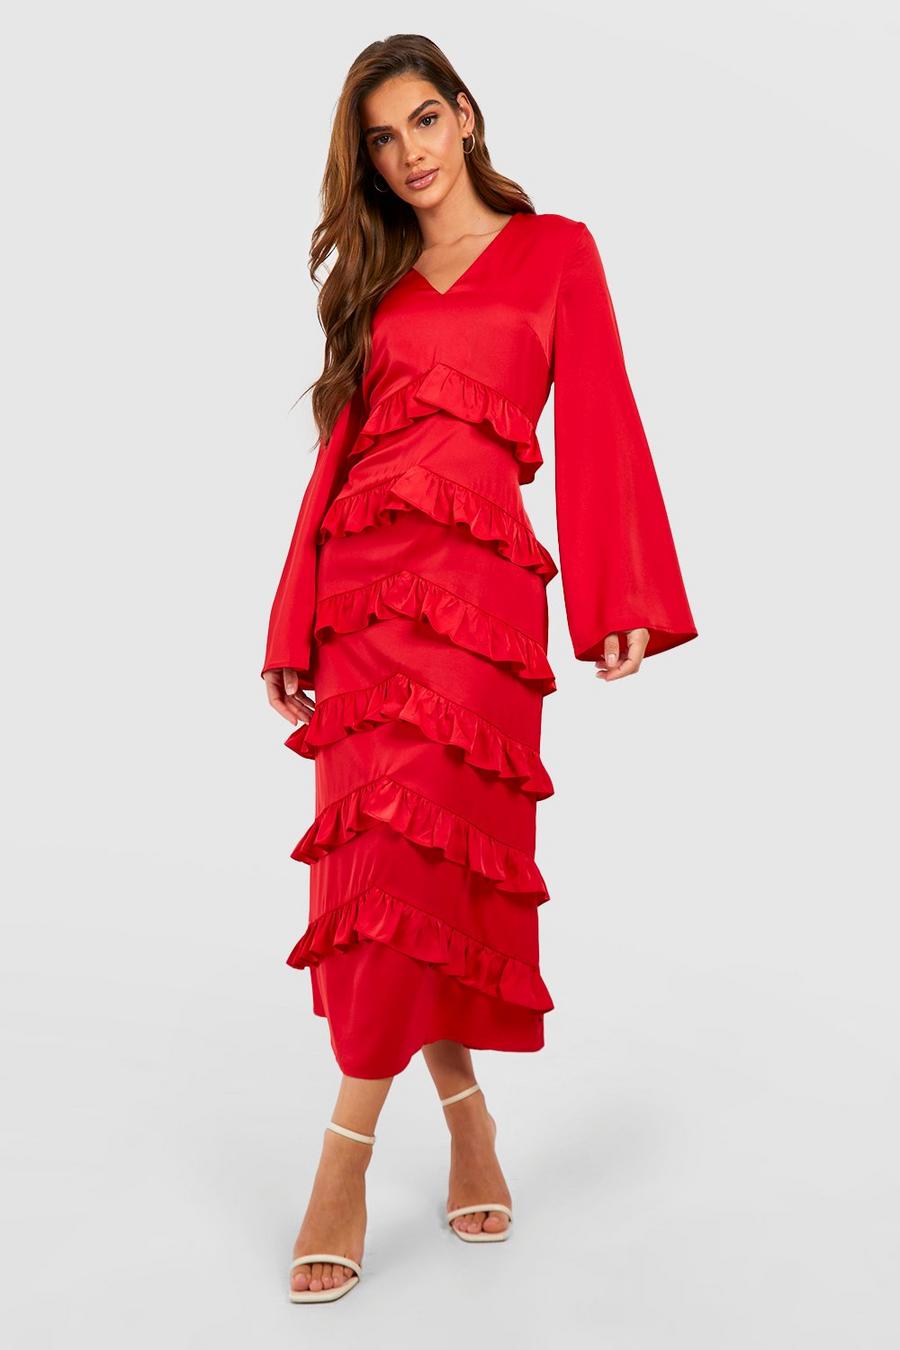 Red Chiffon Ruffle Tiered Midaxi Dress